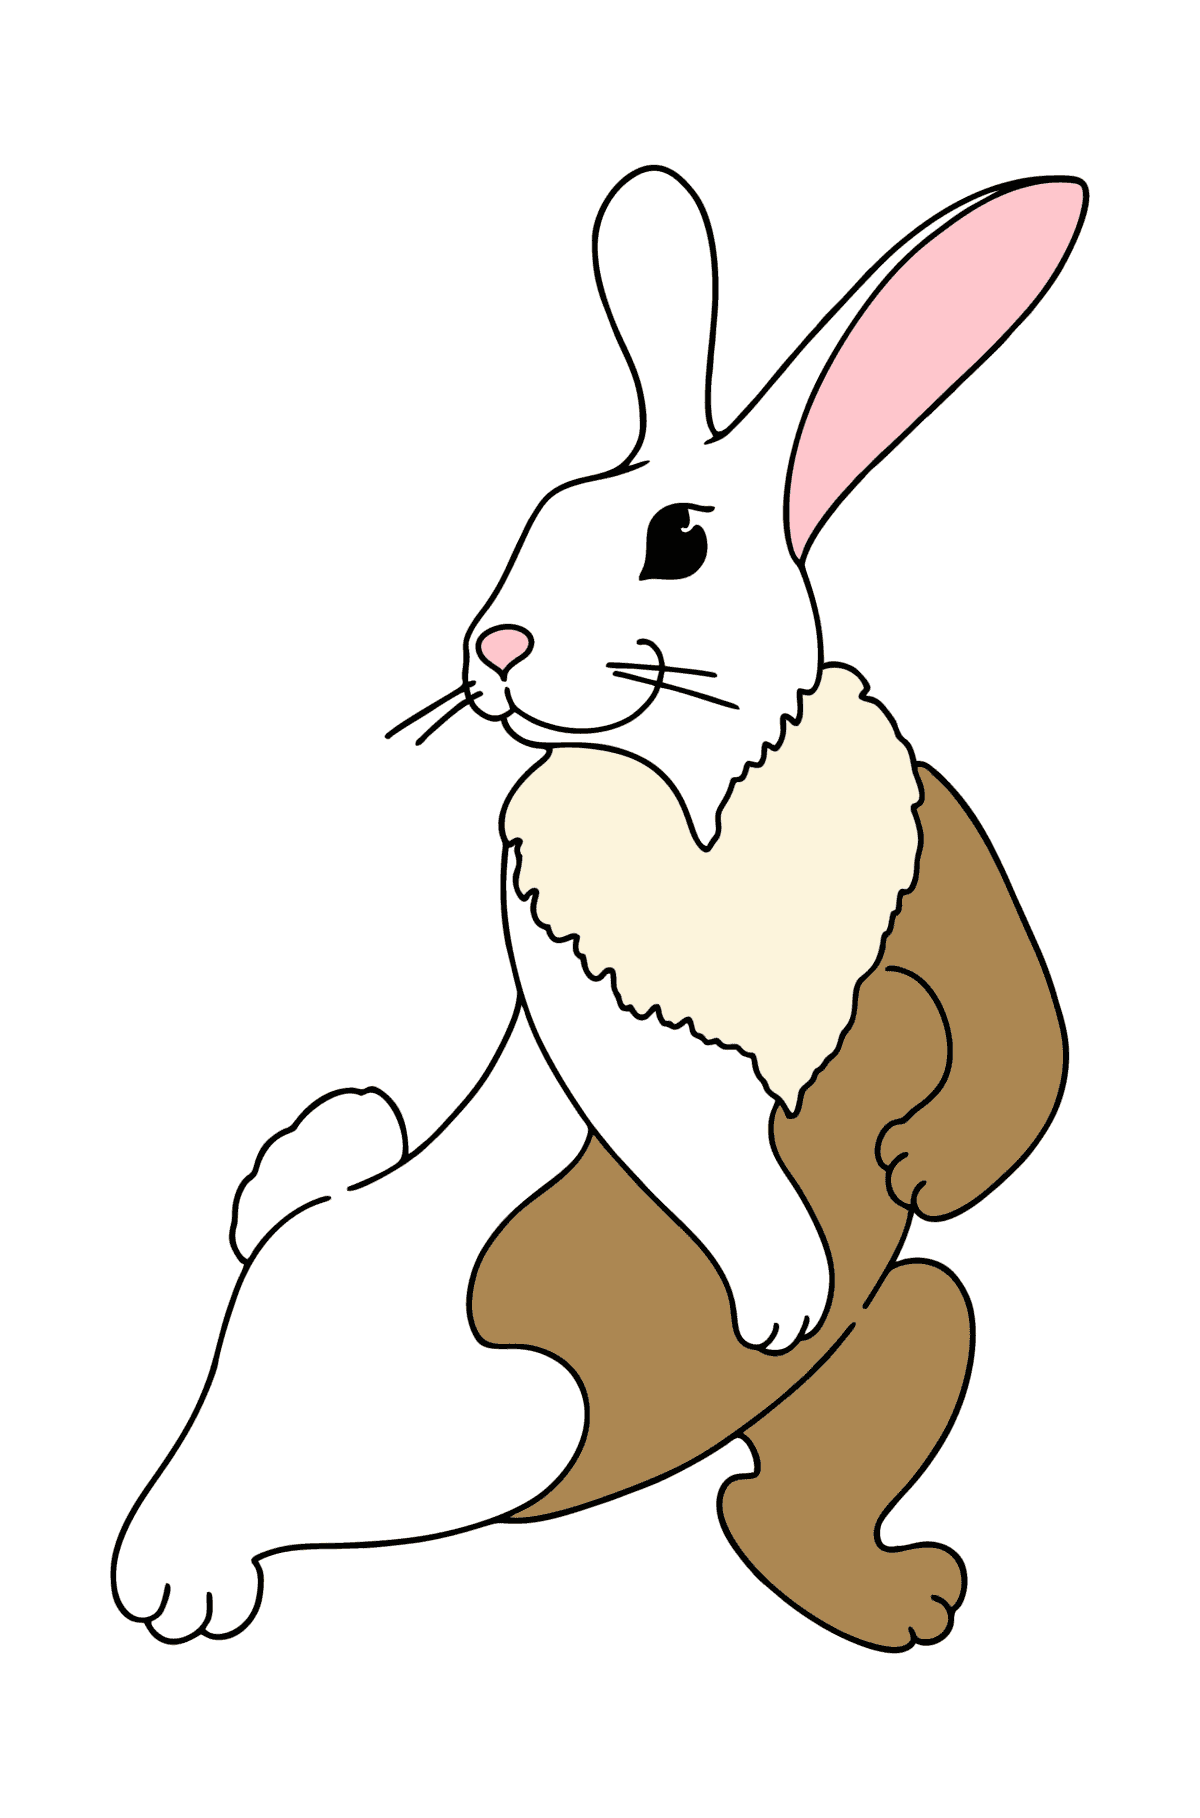 Desenho para colorir do coelhinho brincalhão - Imagens para Colorir para Crianças